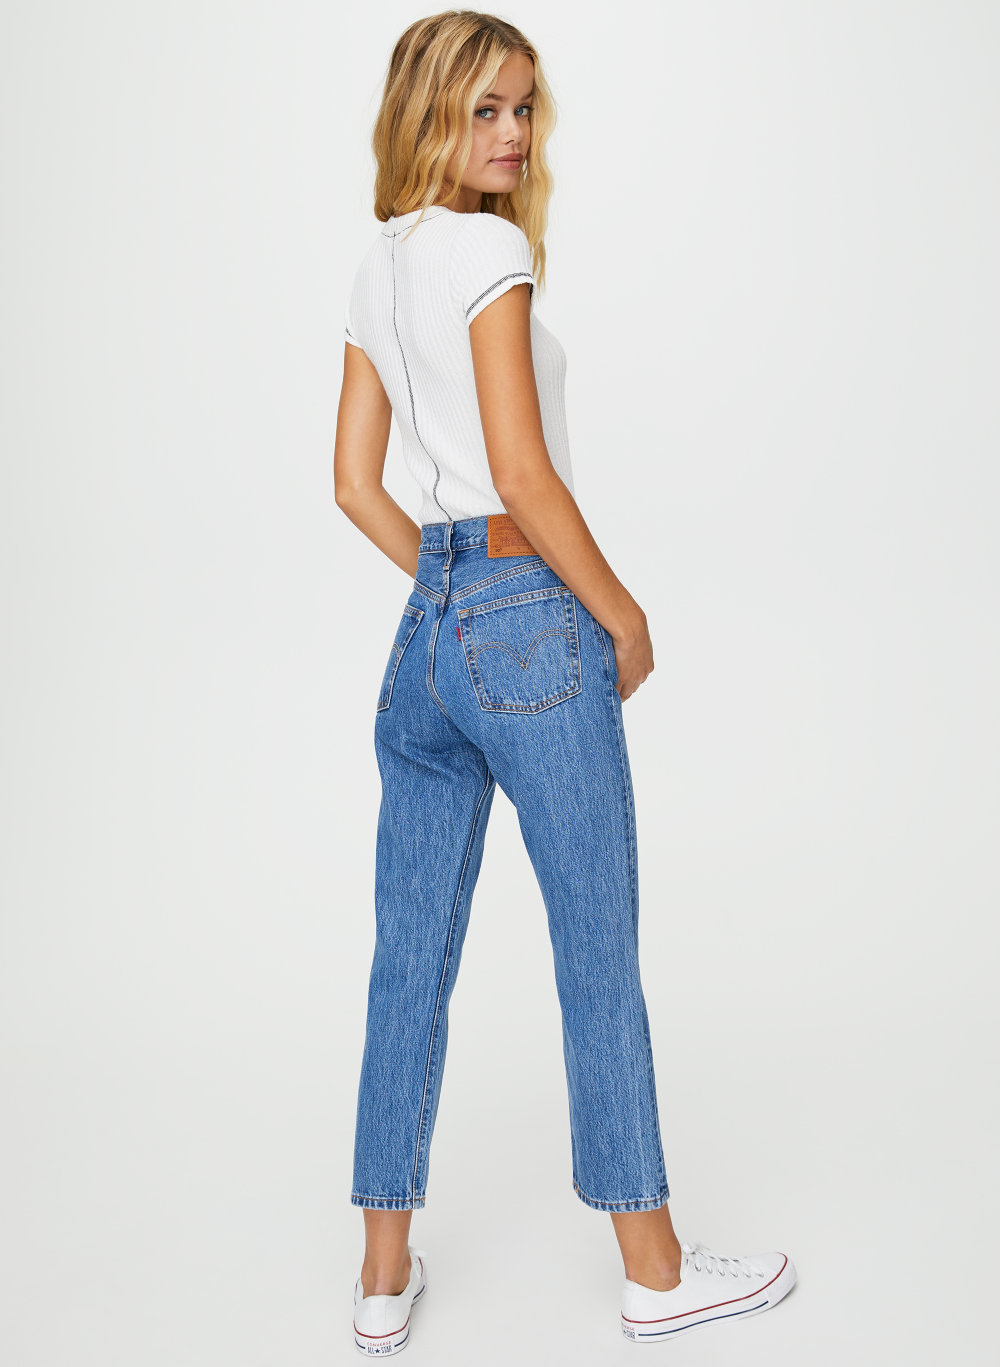 levi's 501 crop jeans